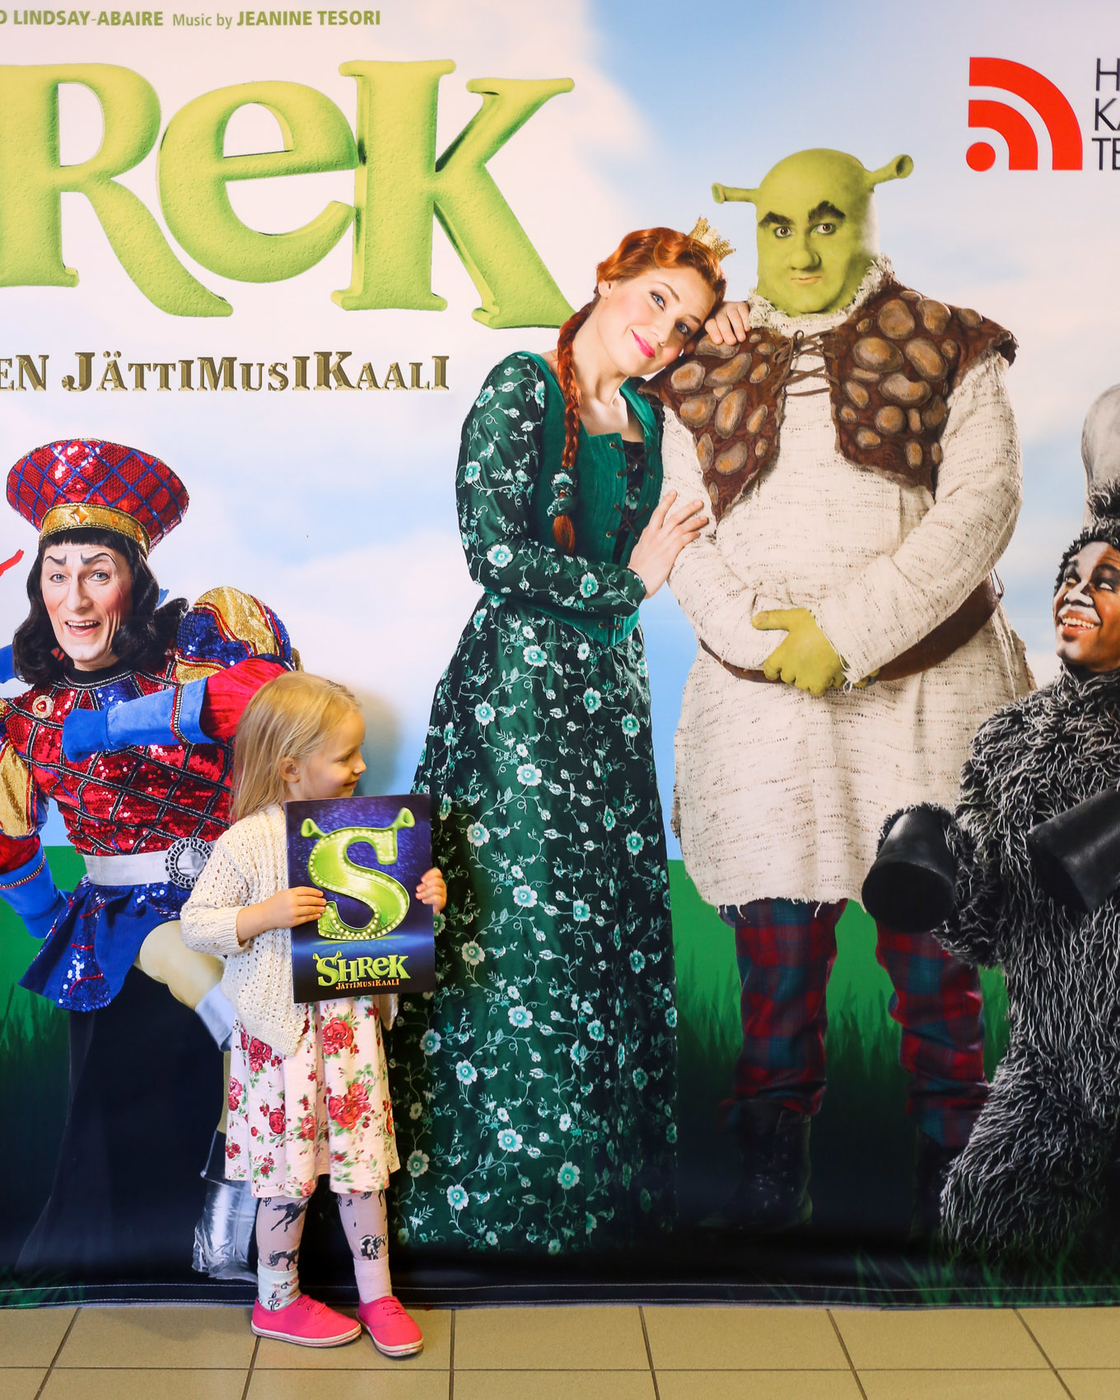 HKT:n Shrek-jättimusikaali naurattaa ja viihdyttää